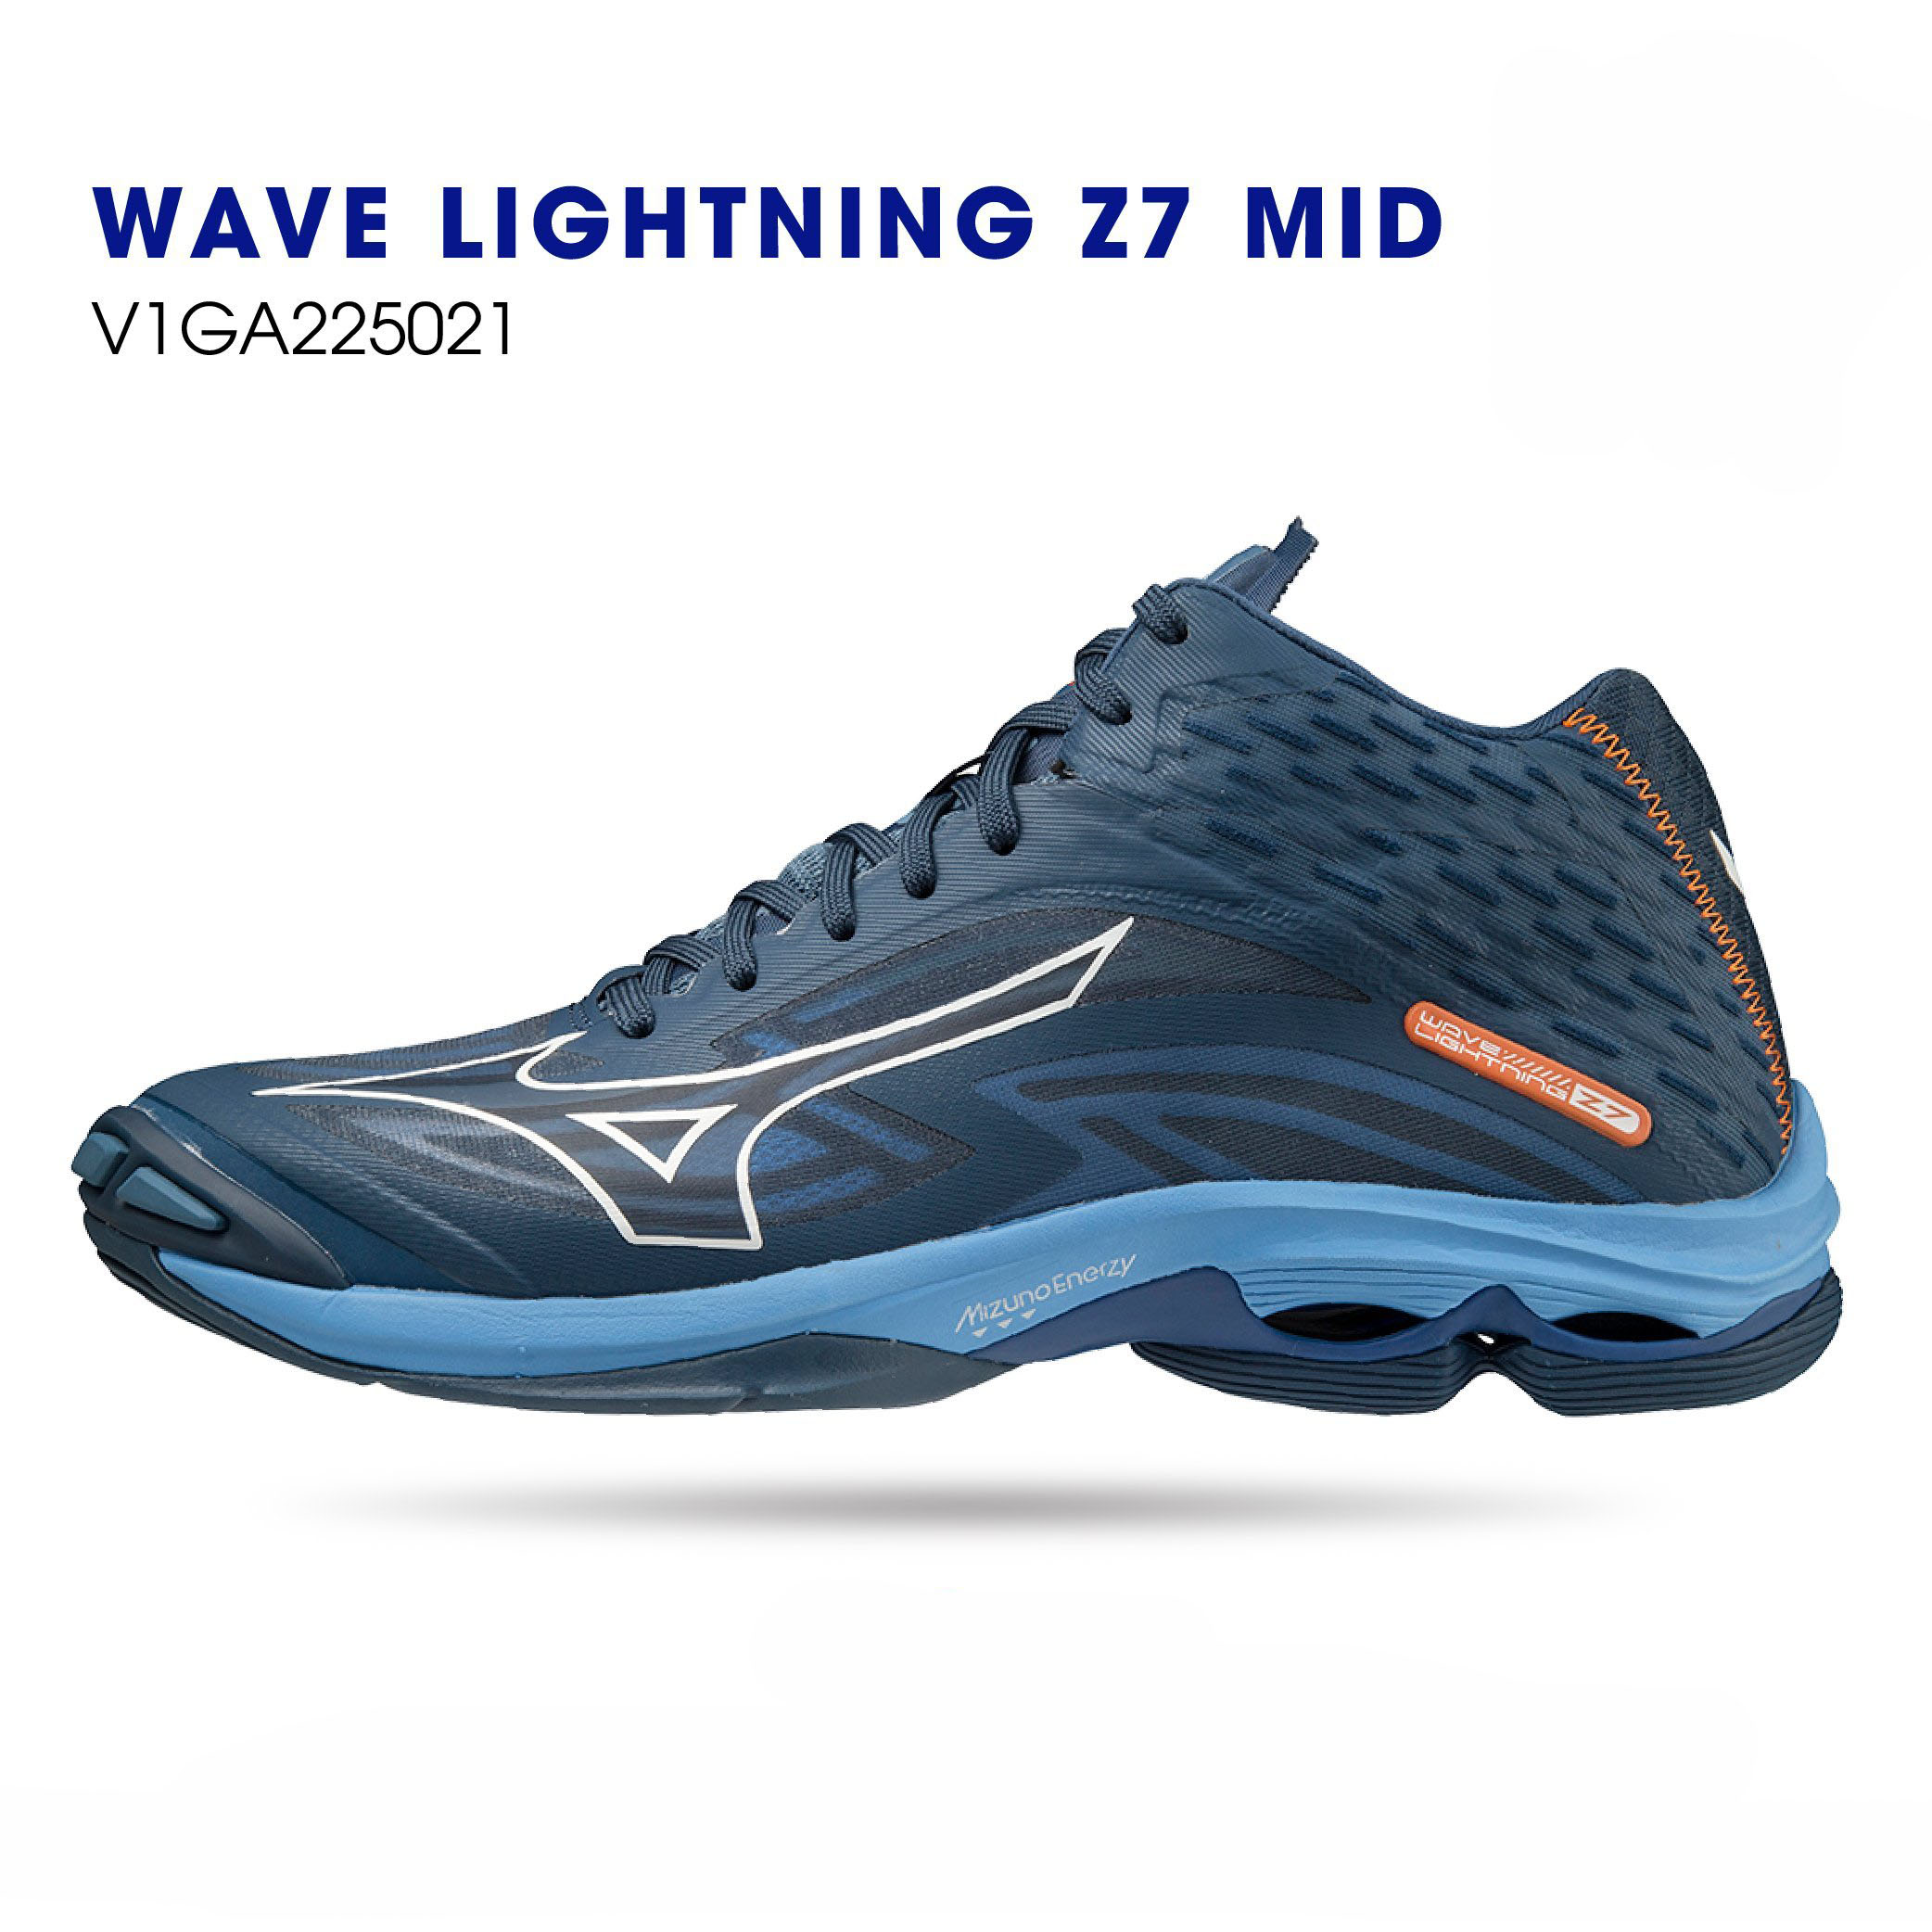 Giày bóng chuyền Mizuno chính hãng Wave Lightning Z7 Mid V1GA225021 màu